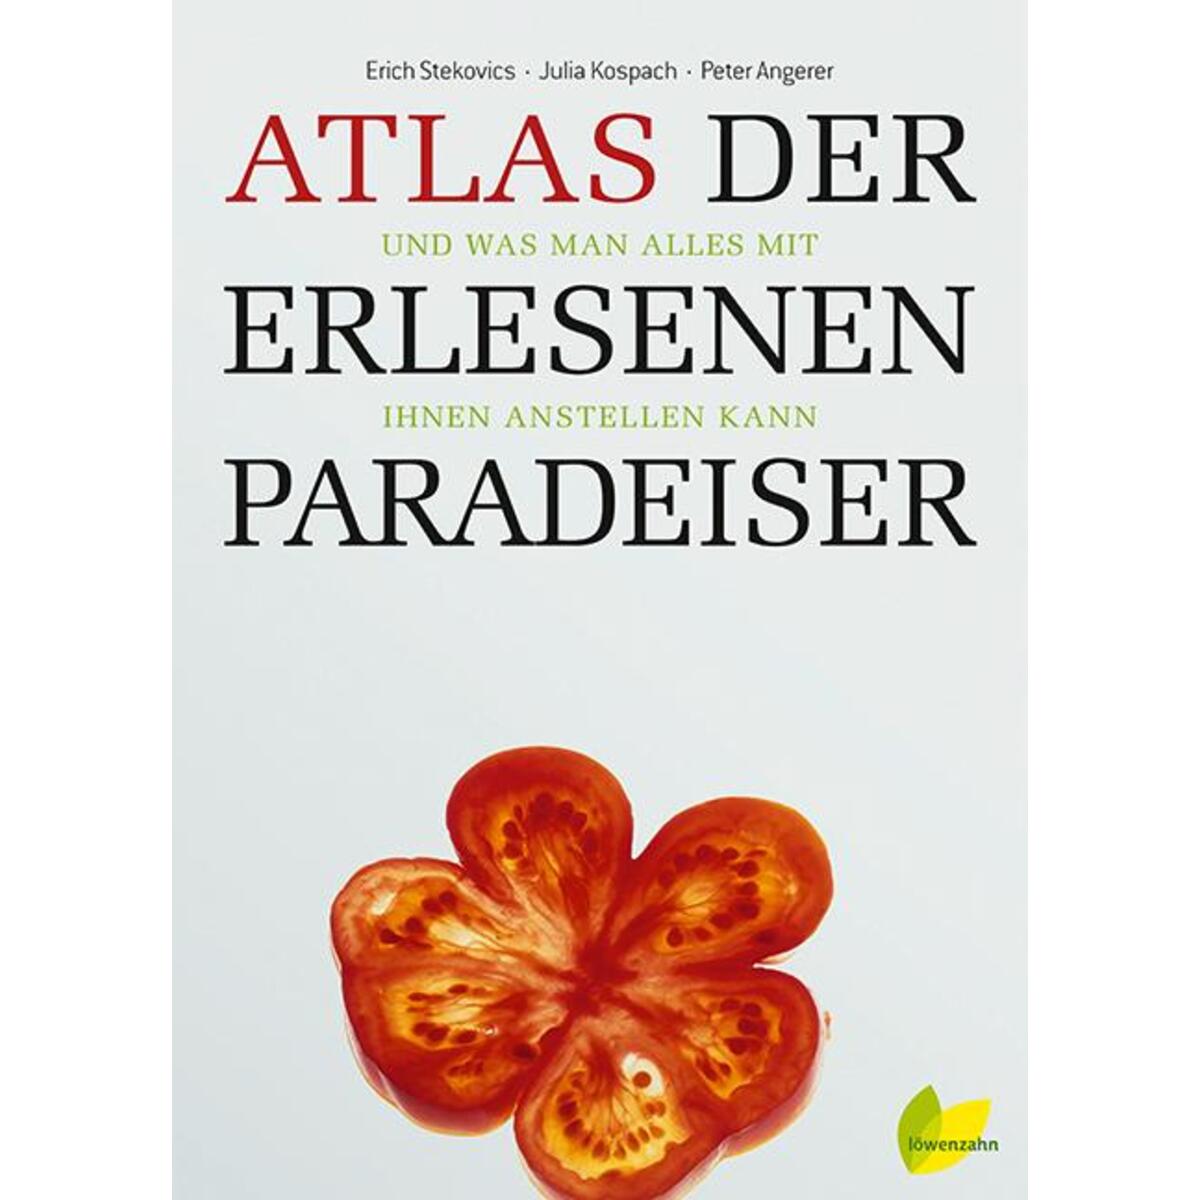 Atlas der erlesenen Paradeiser von Edition Loewenzahn